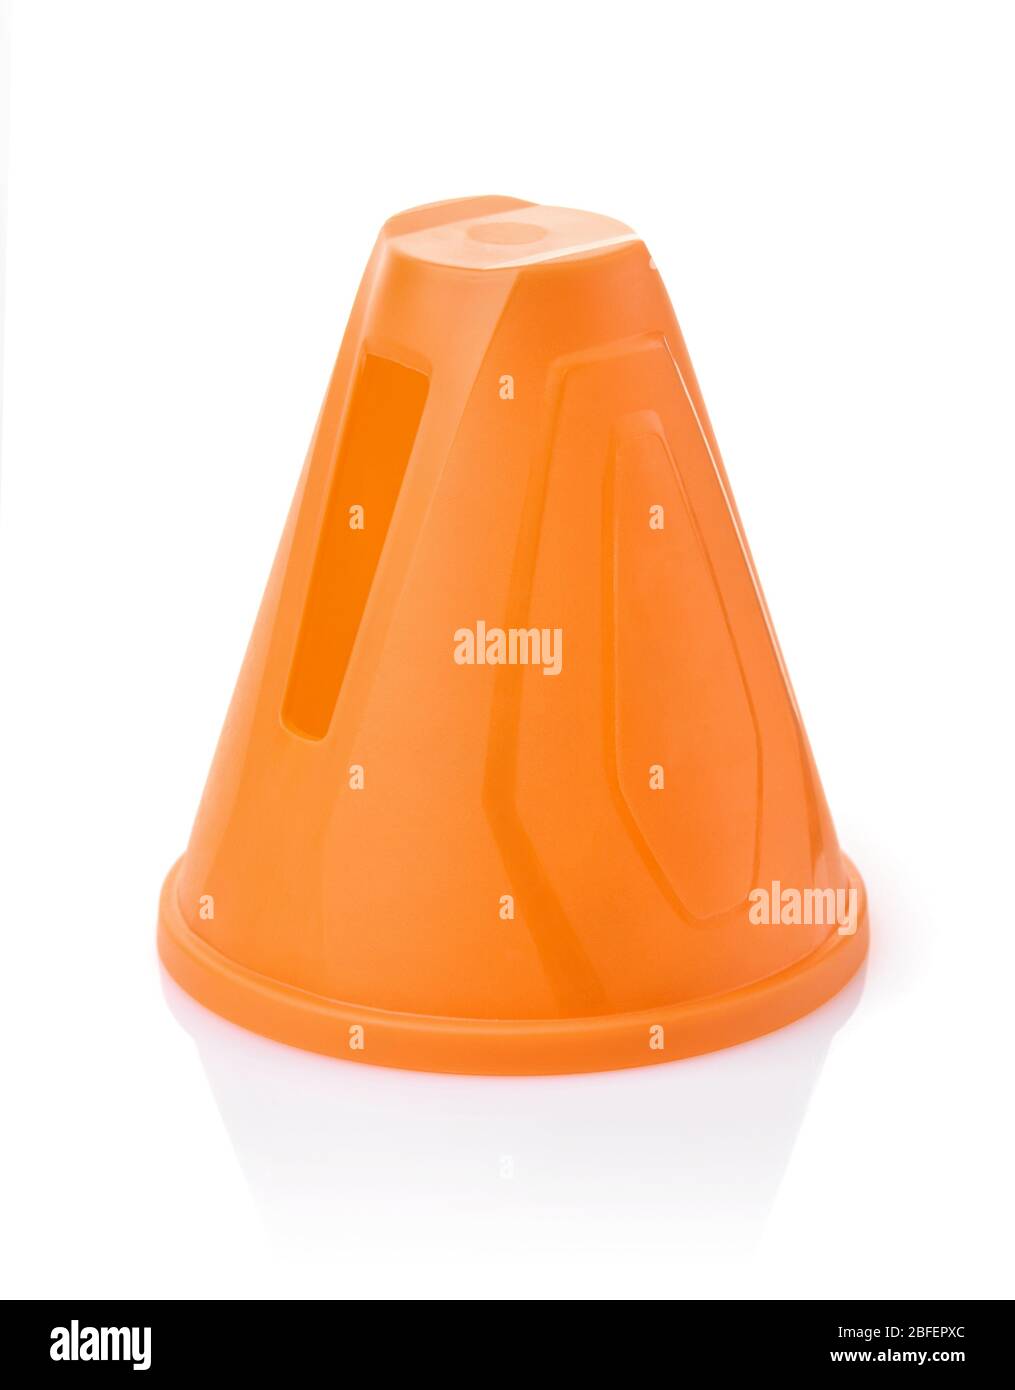 Cono de plástico de color naranja de slalom aislado en blanco Foto de stock